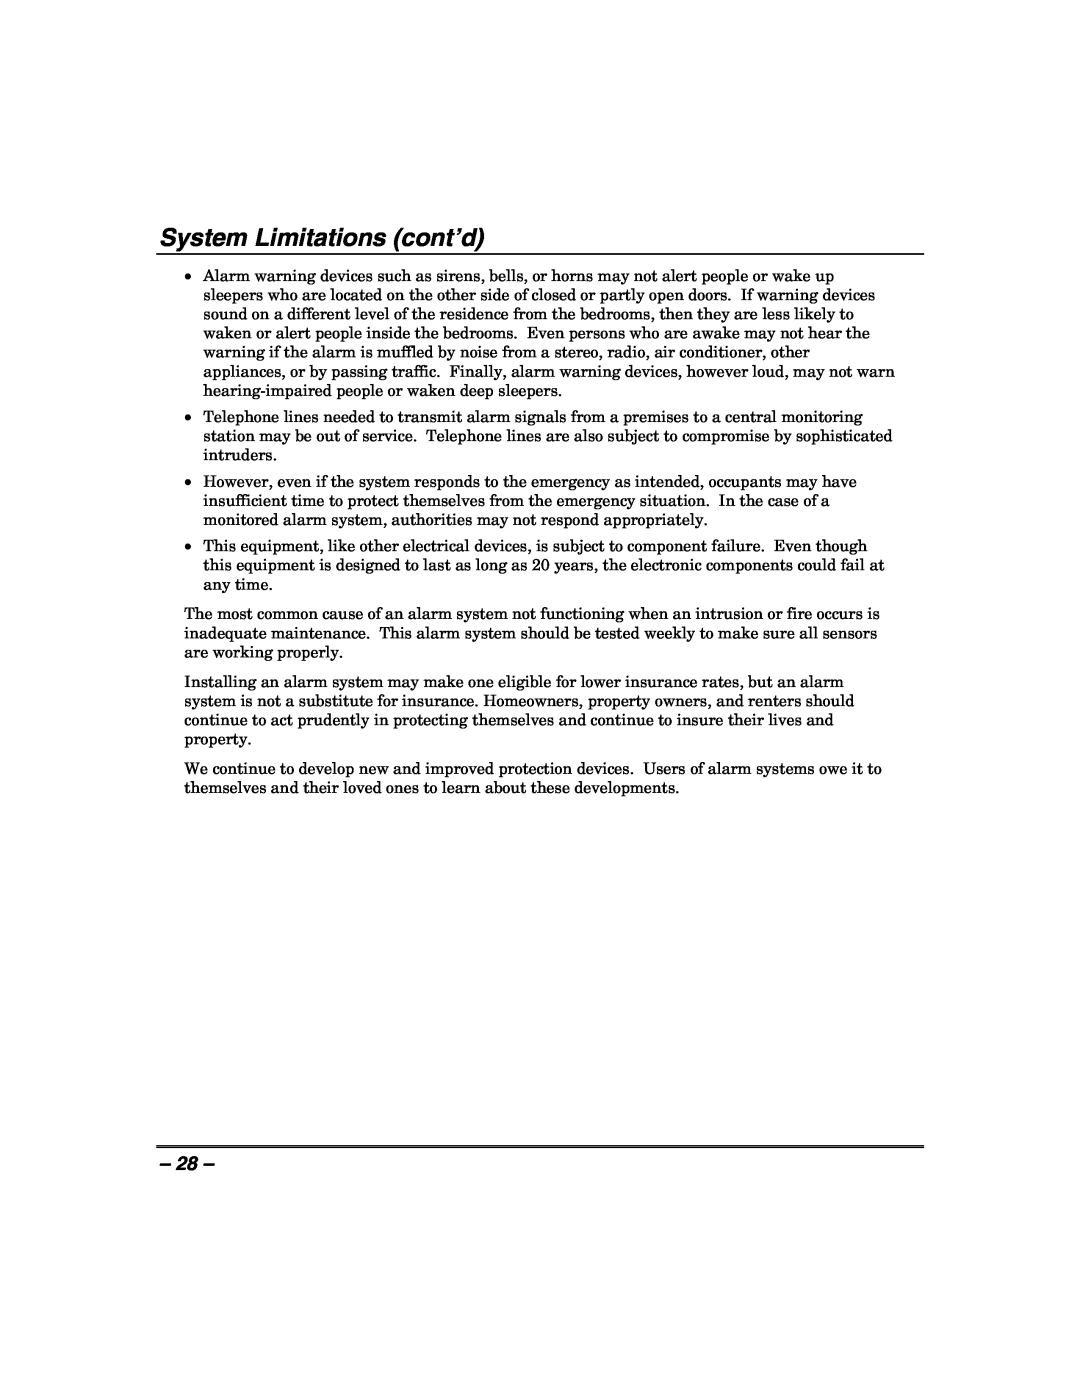 Honeywell 408EU manual System Limitations cont’d 